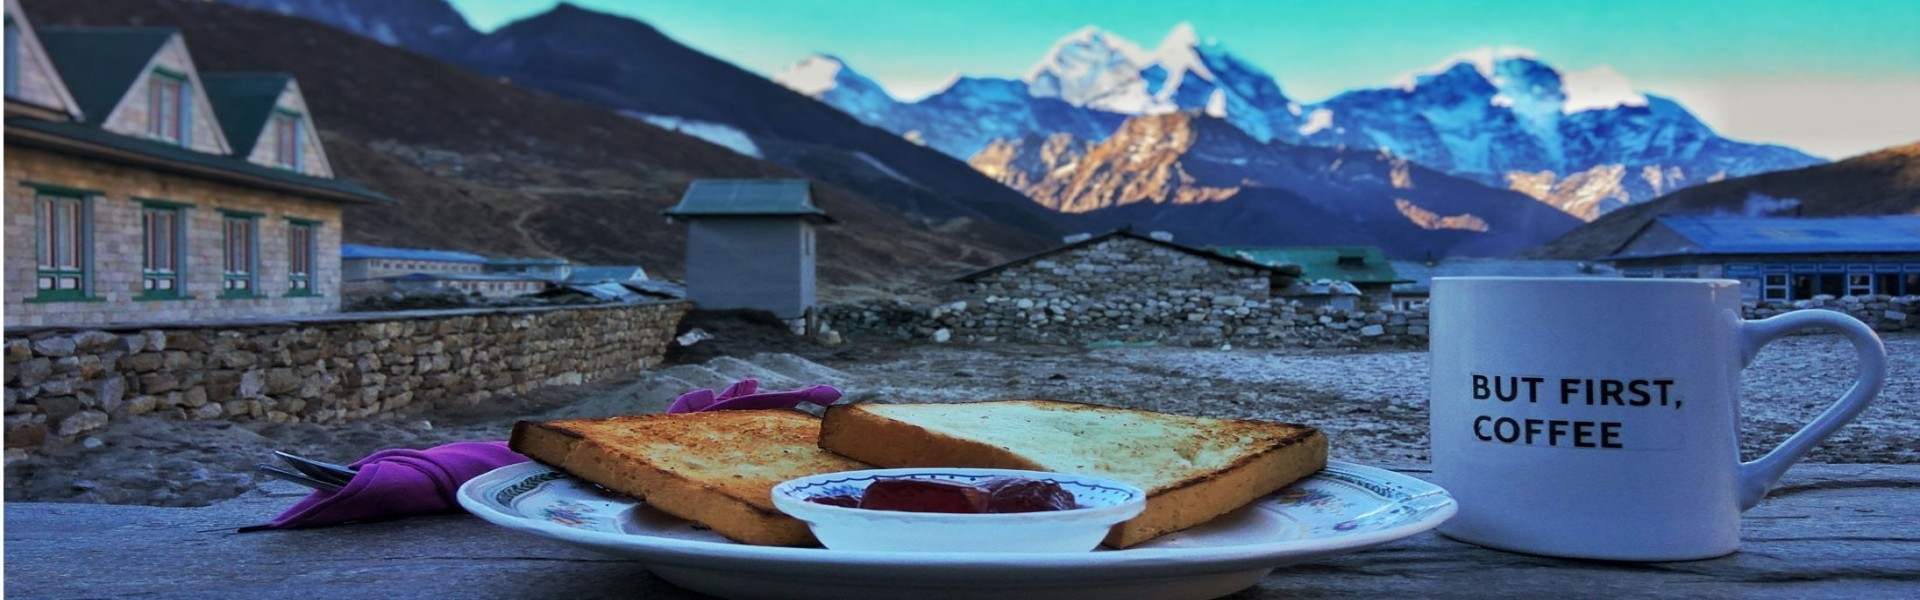 Breakfast during Everest base camp trek